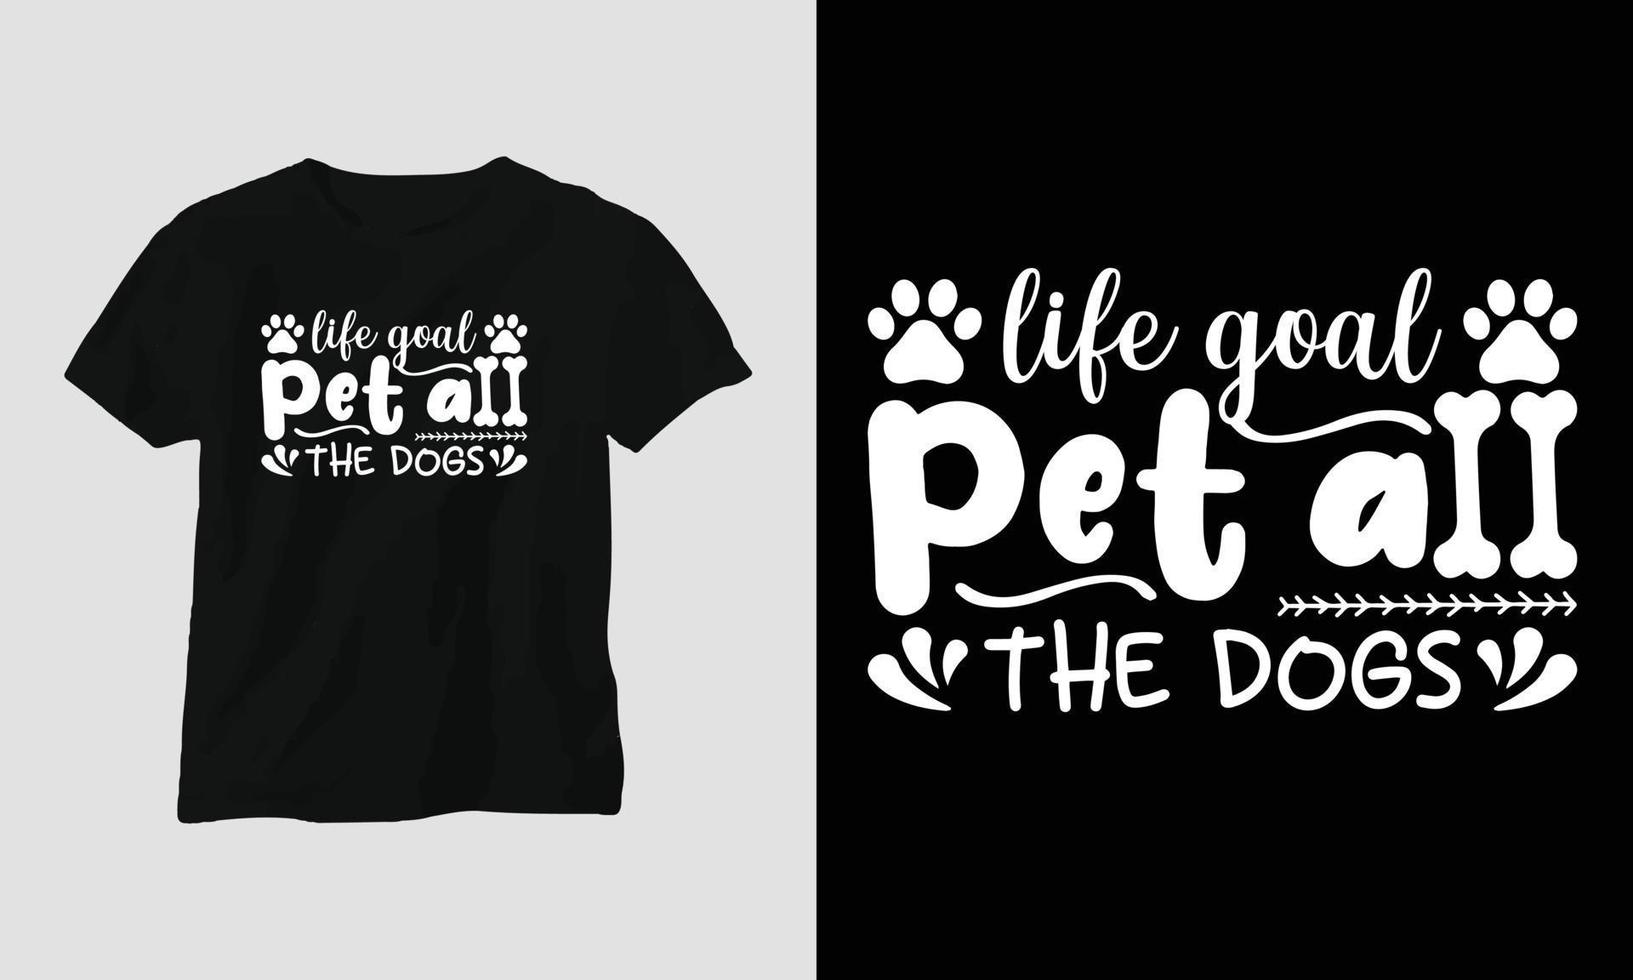 liv mål sällskapsdjur Allt de hundar - hund citat t-shirt och kläder design vektor